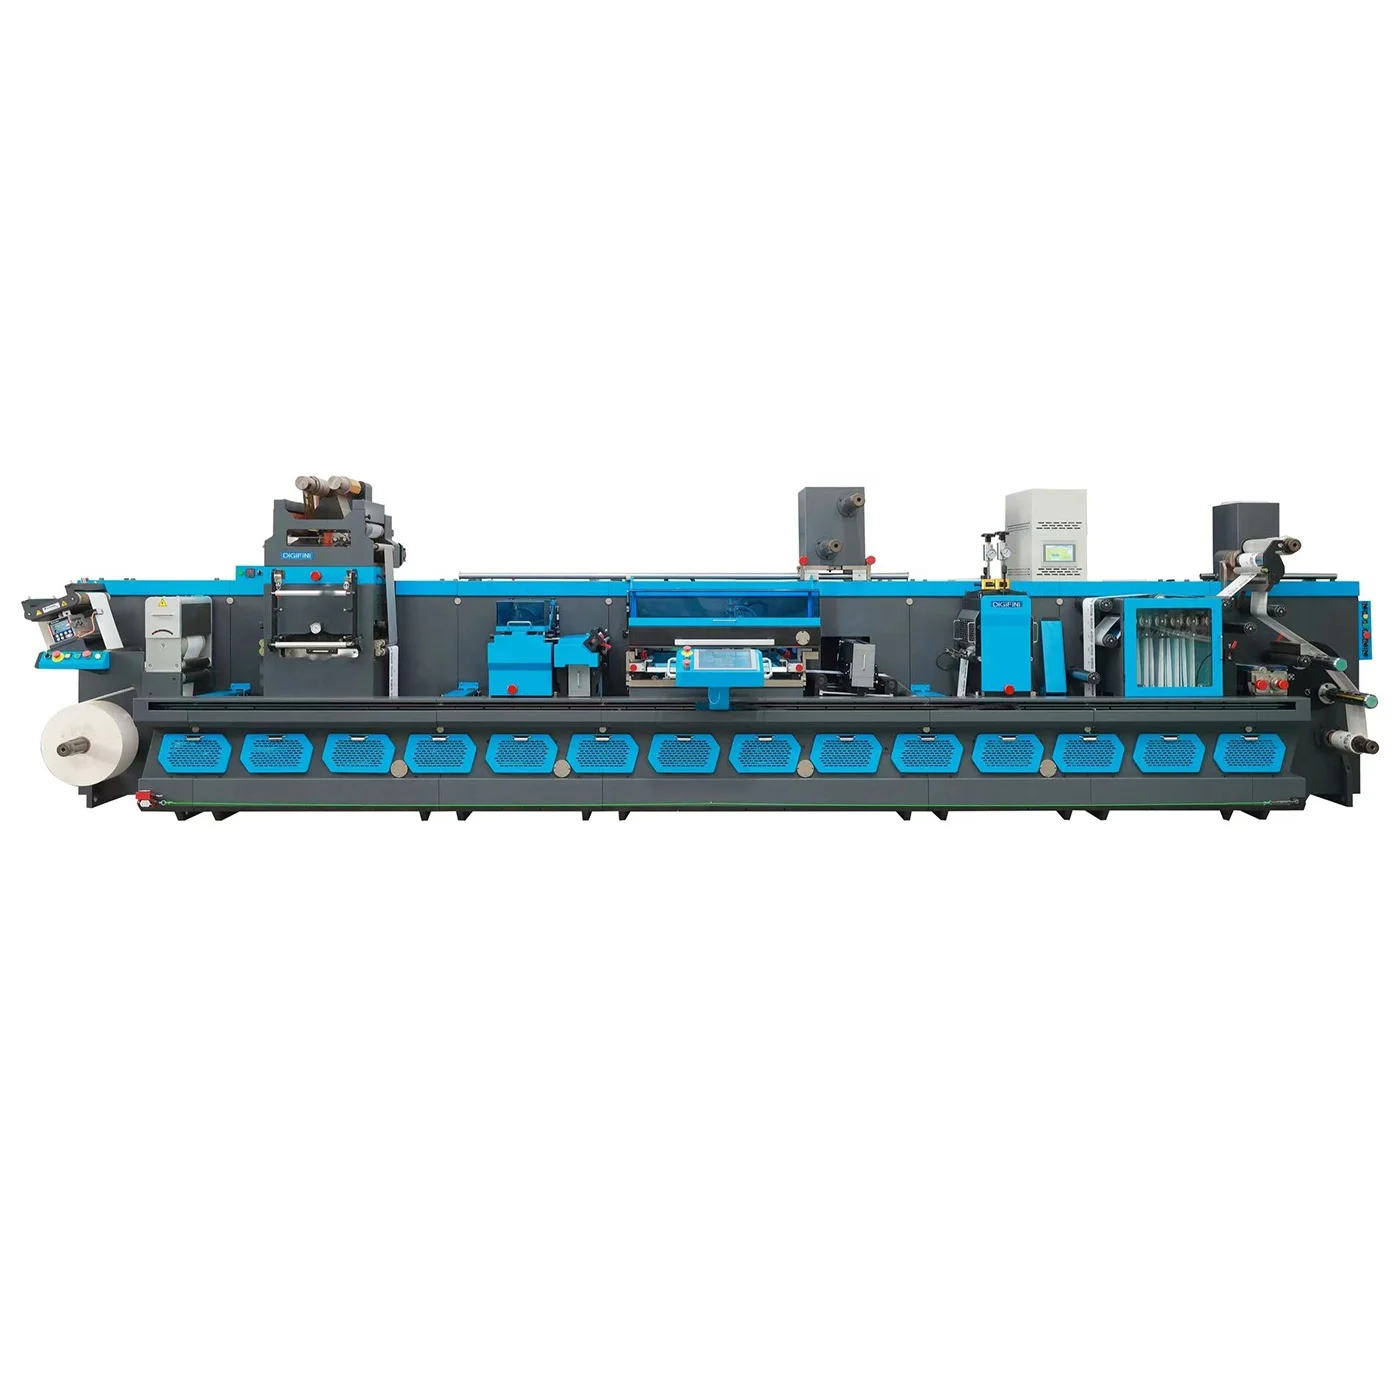 Hontec MPX 350 равноотстоящих пост прессовое оборудование вращающаяся штанцевальная машина с флексографской печати (1600659647740)